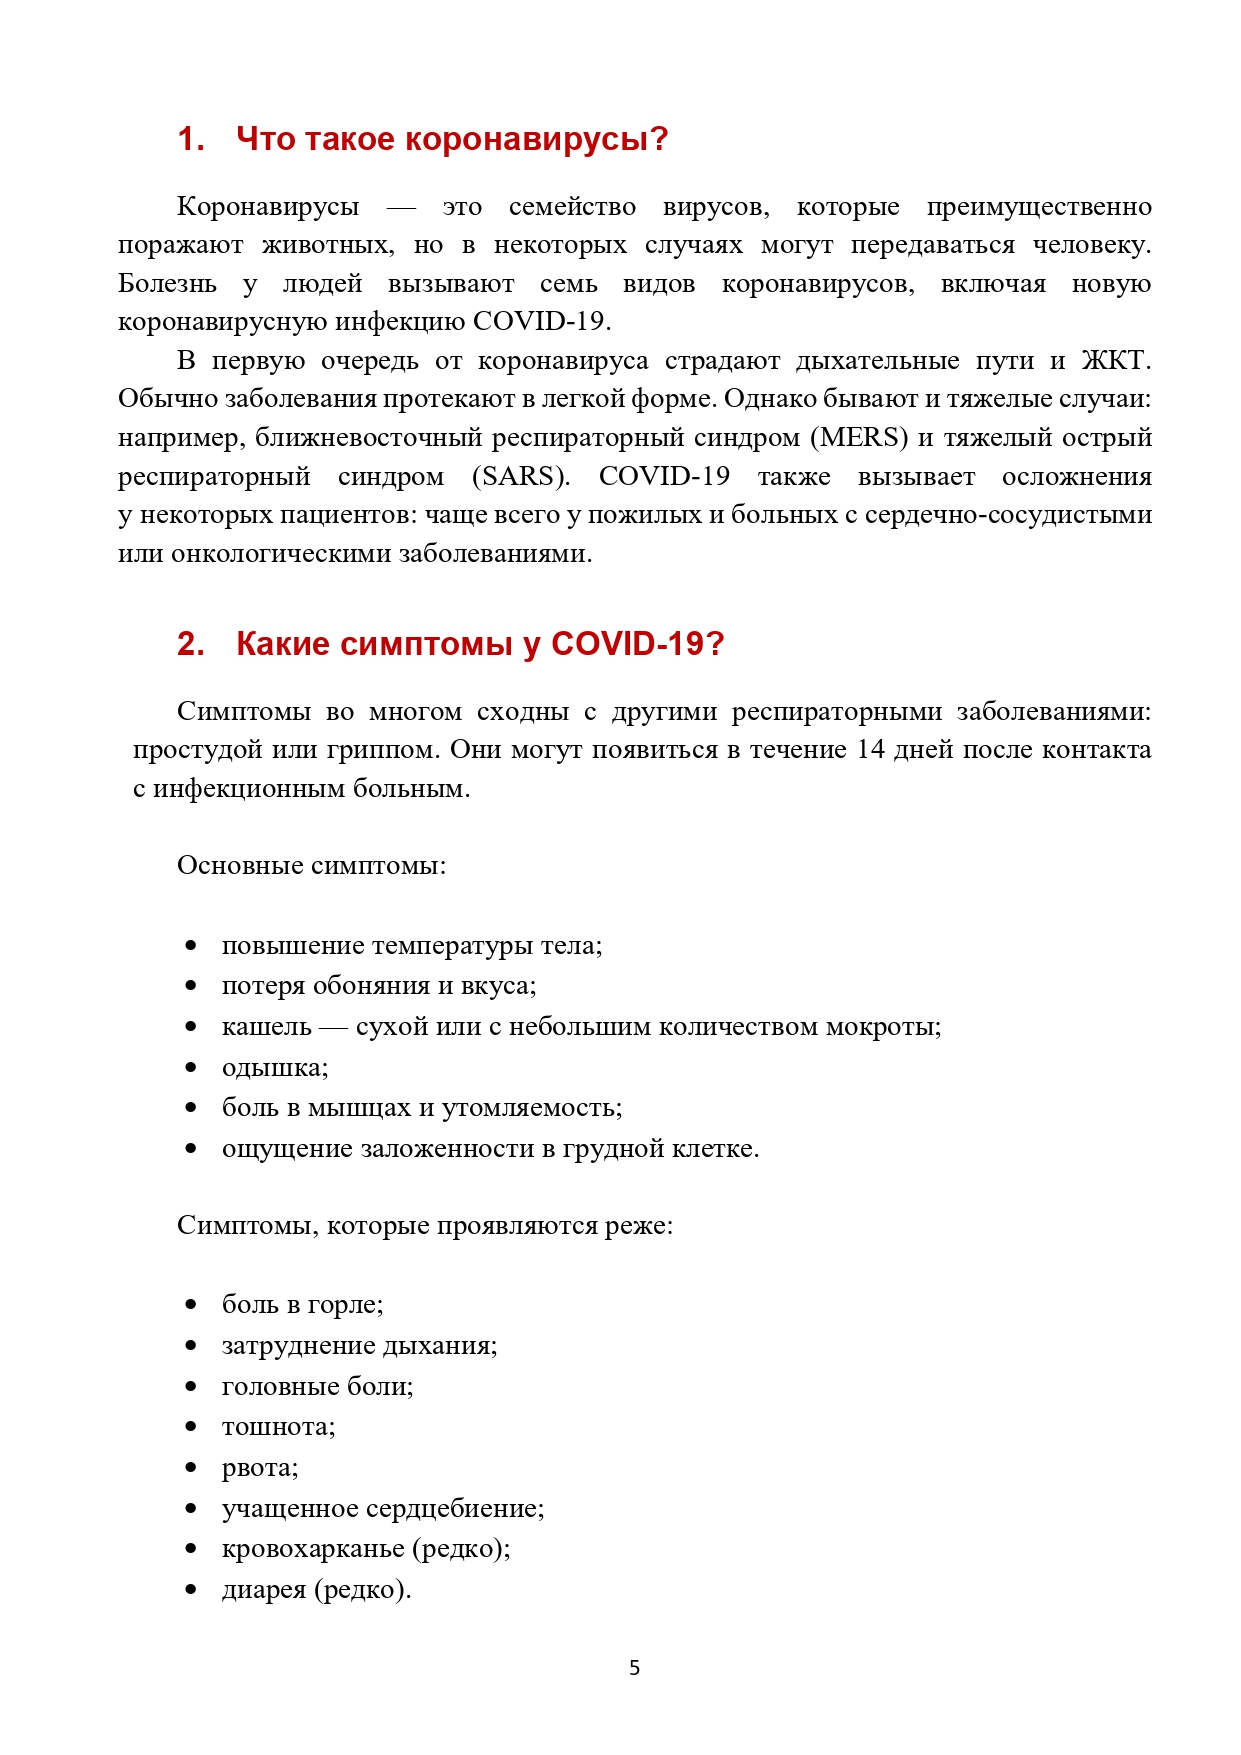 Ответы по новой коронавирусной инфекции_page-0005